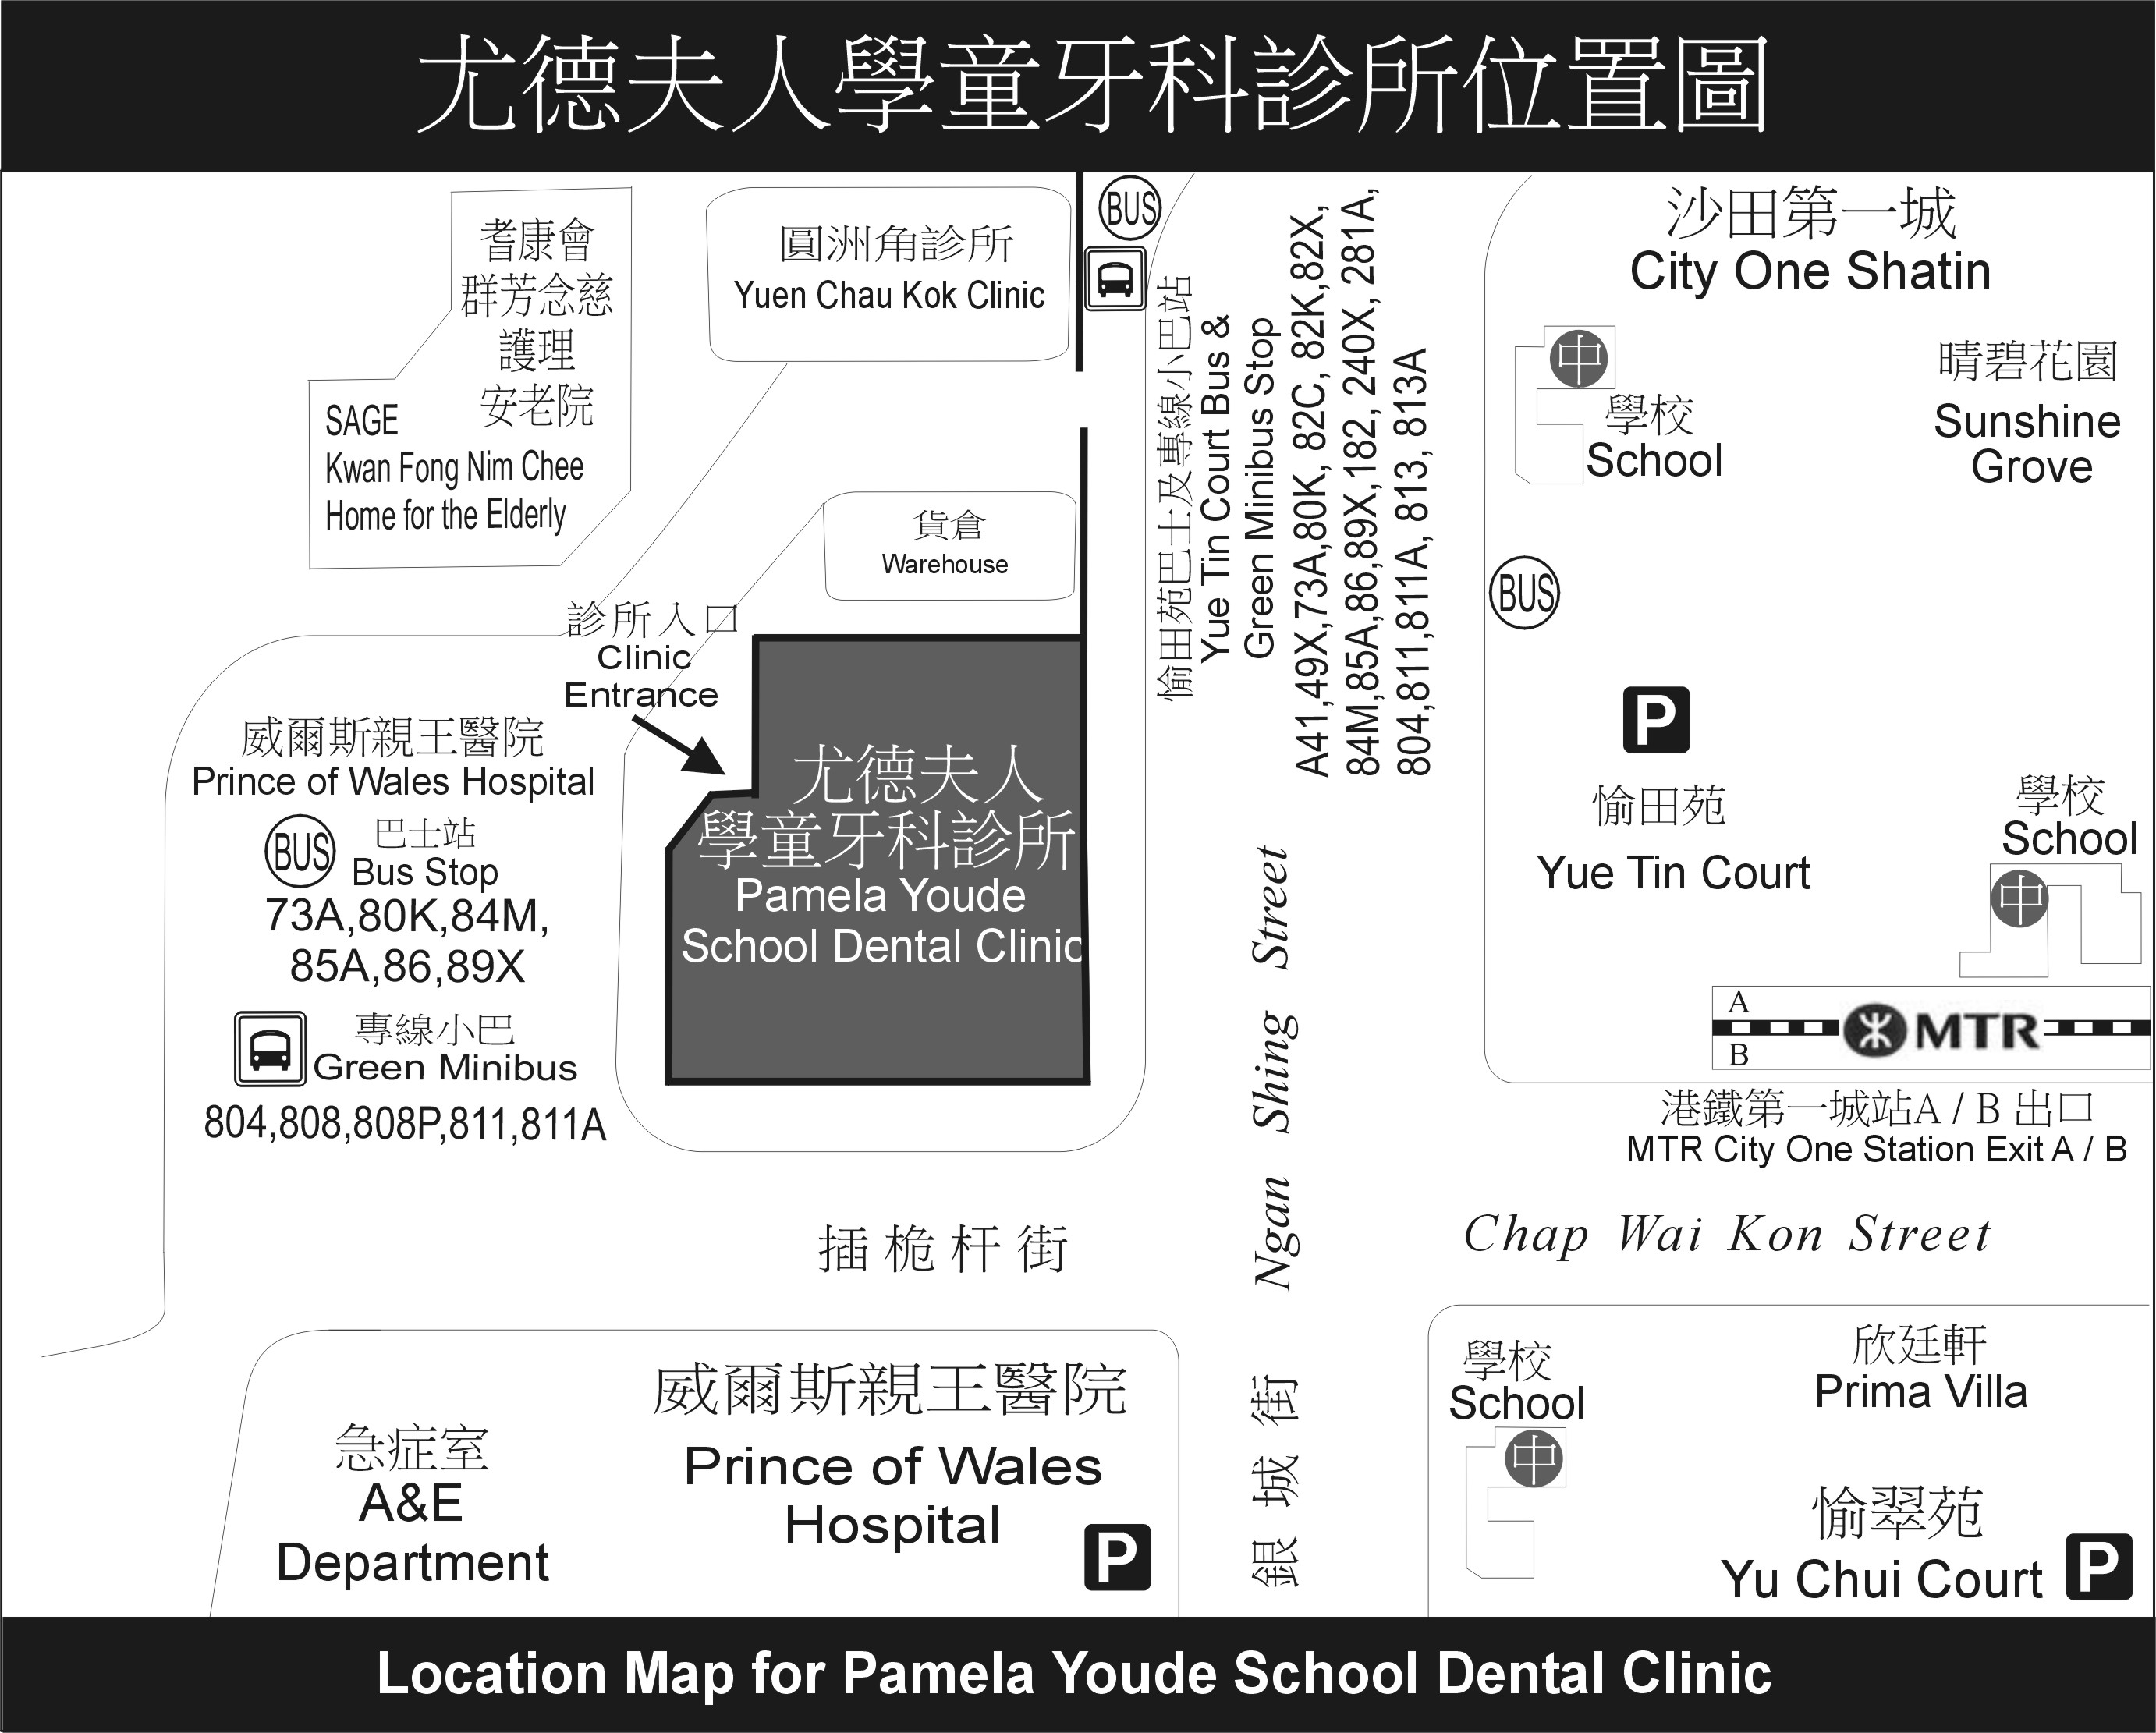 尤德夫人學童牙科診所位置圖相片。尤德夫人學童牙科診所位於新界沙田插桅杆街31-33號一字樓，附近有圓洲角診所和威爾斯親王醫院。